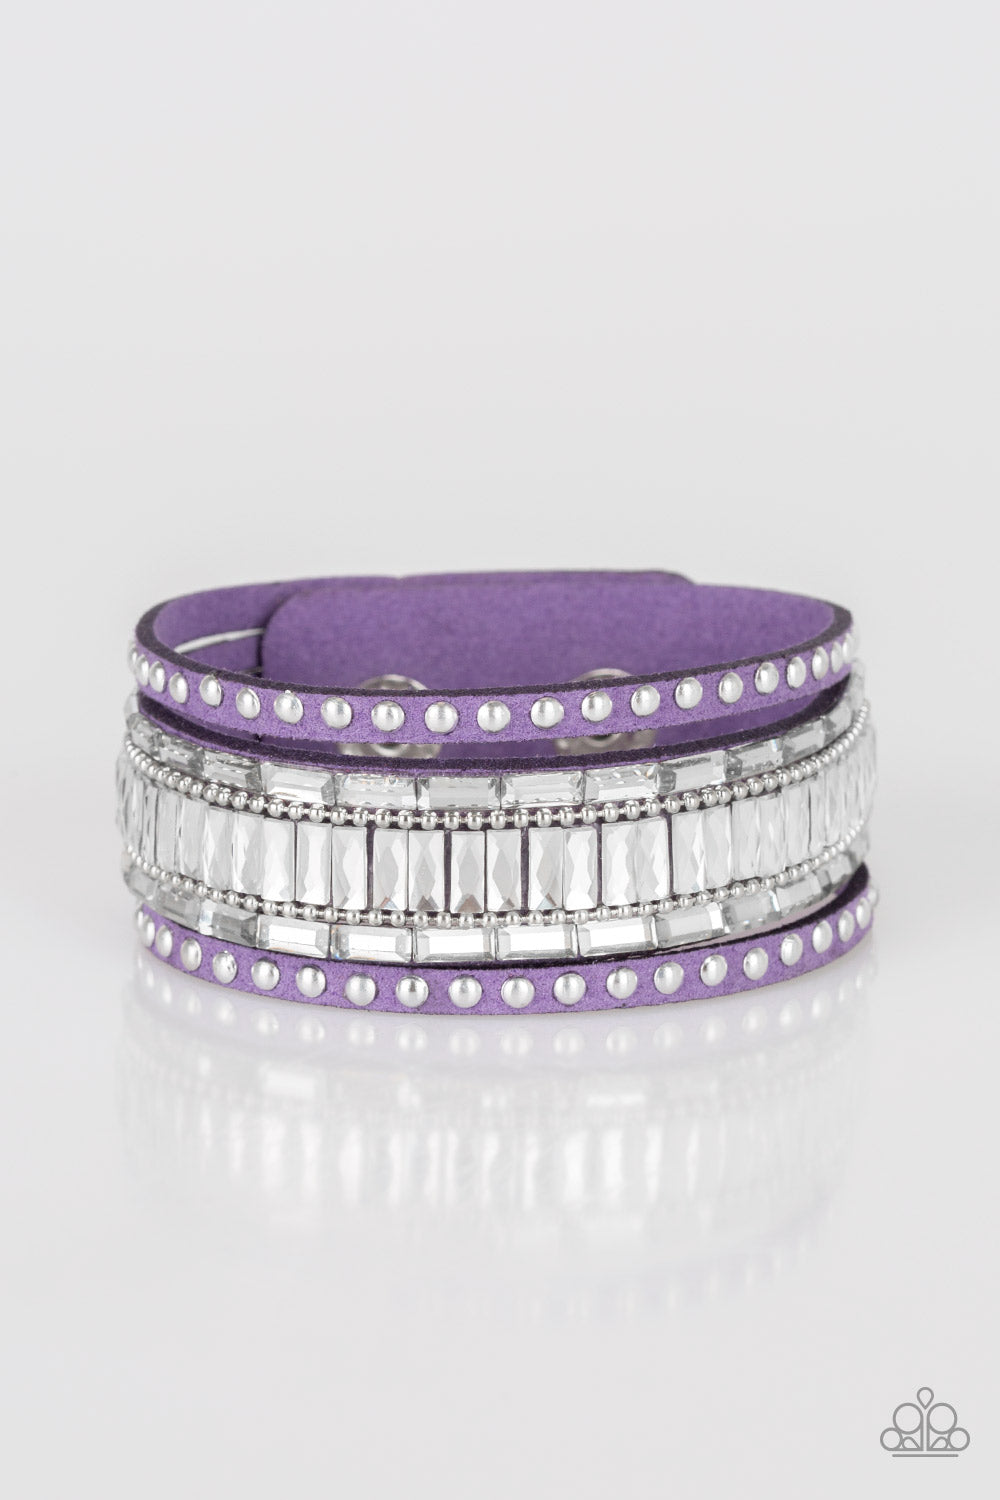 Rock Star Rocker - purple - Paparazzi bracelet